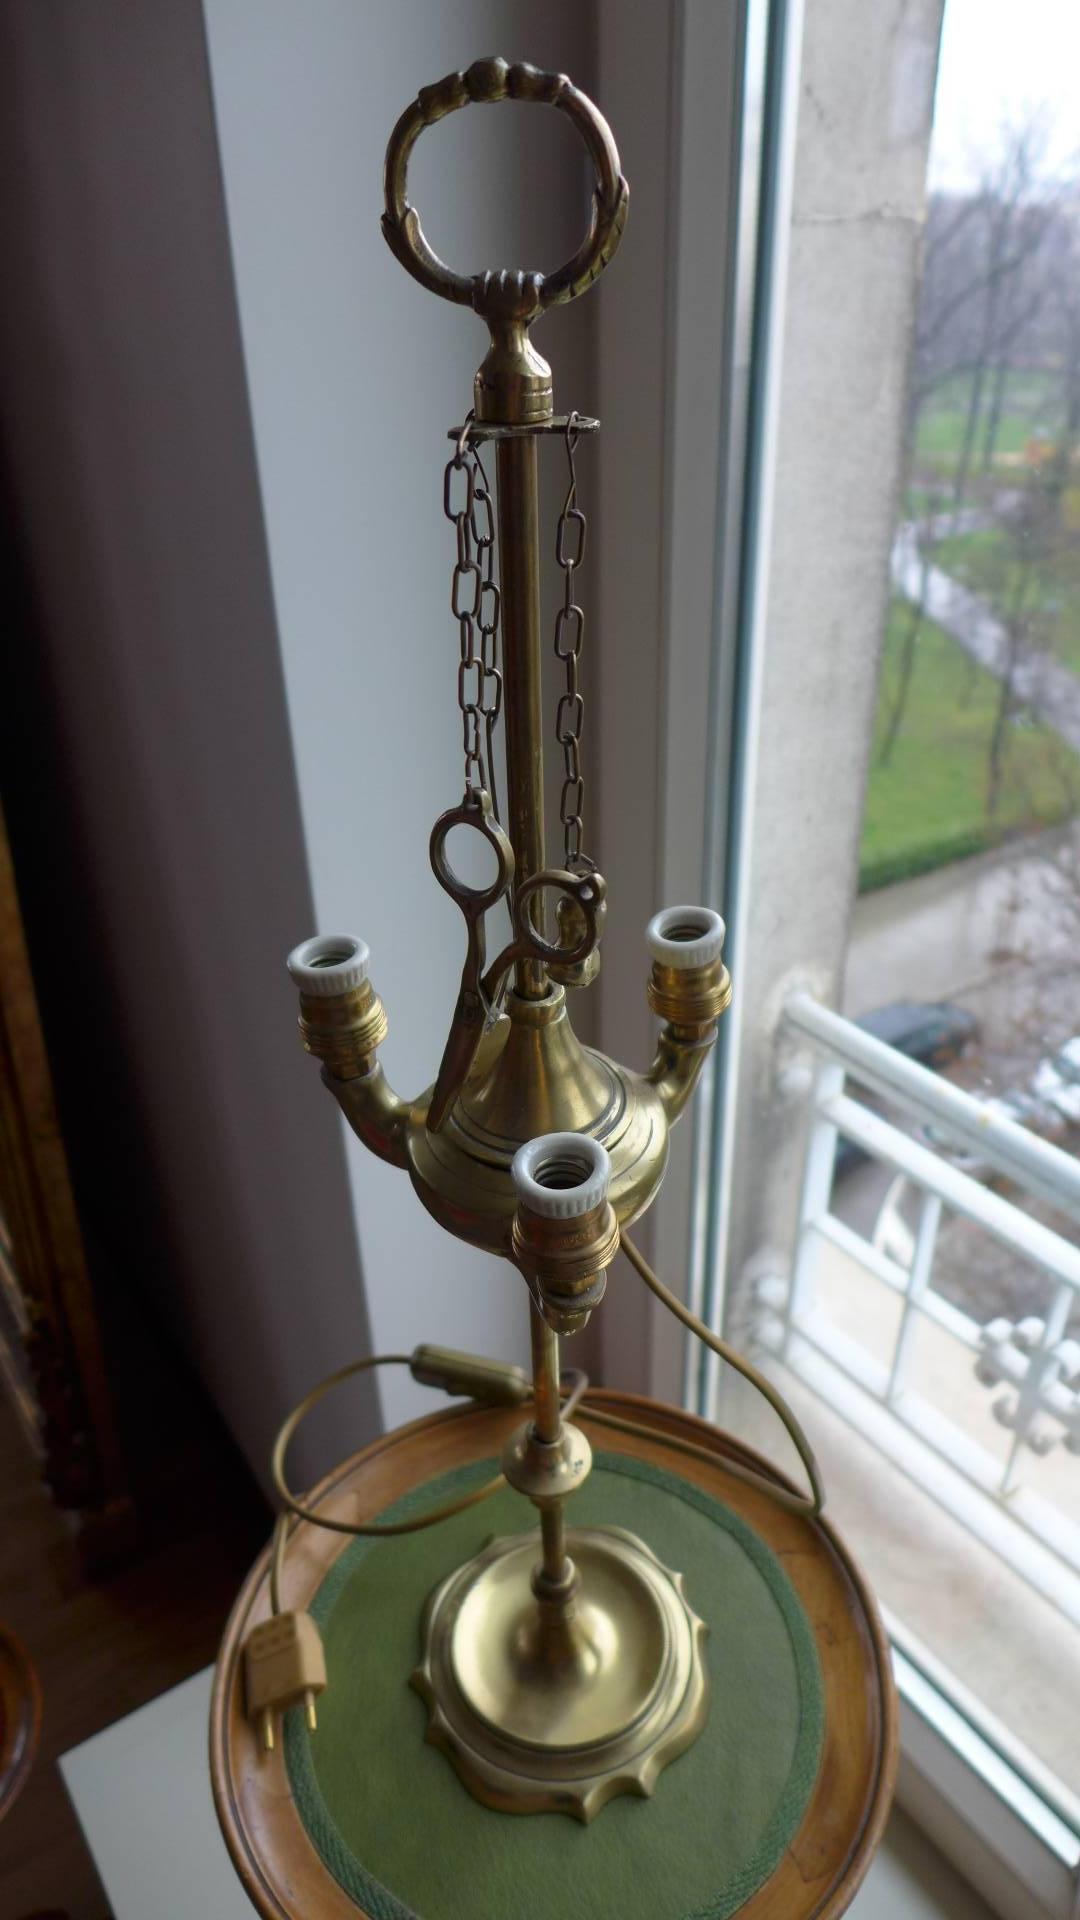 lampe de bureau en laiton électrifié du 19e siècle, de style Empire.
La partie avec les ampoules est réglable.
France, datant d'environ 1860.